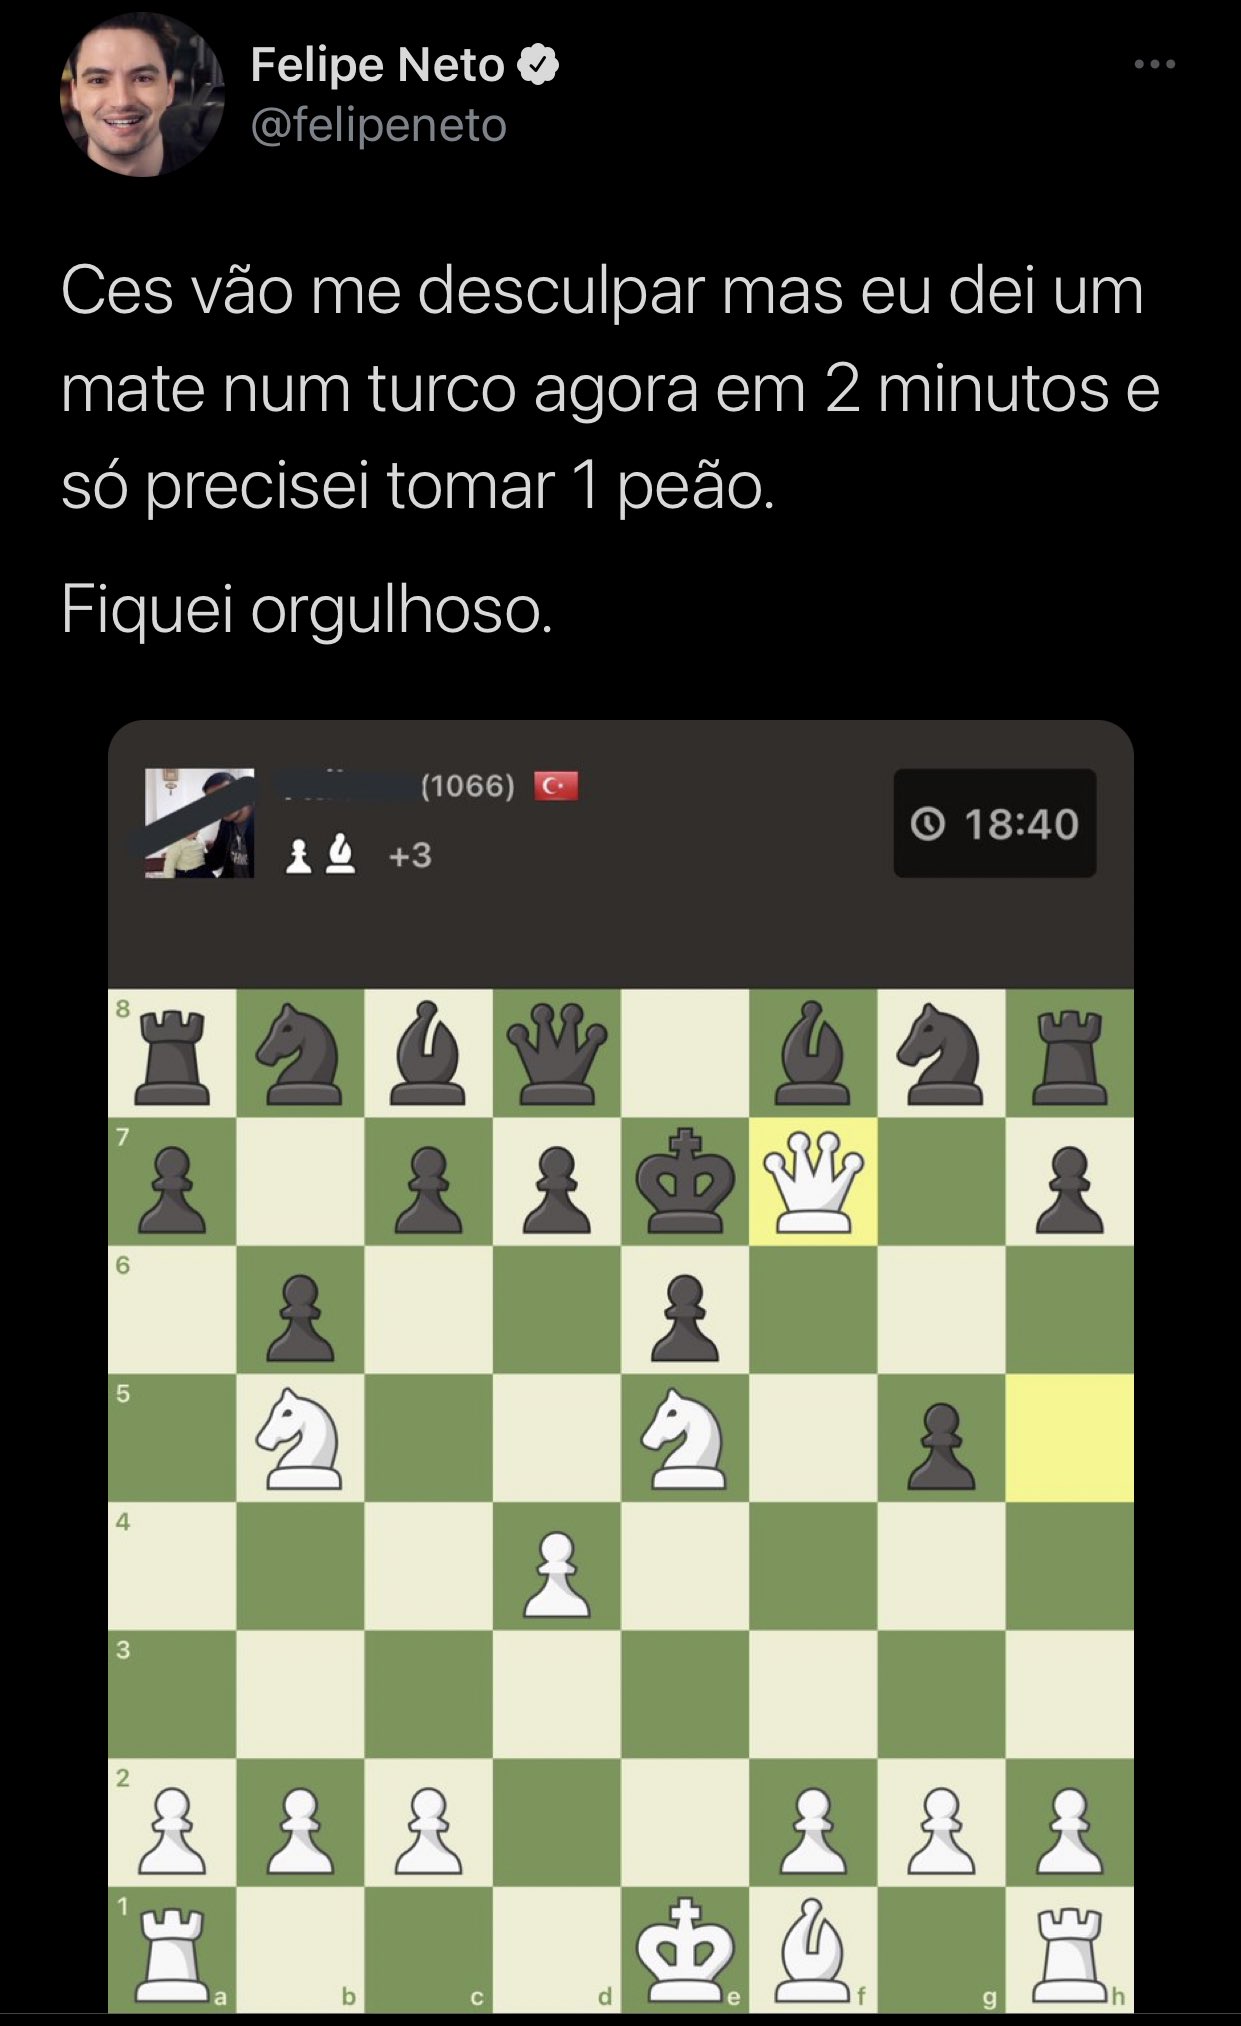 Felipe Neto responde a 'haters' sobre ter usado robôs para vencer em jogo  de xadrez - Revista Fórum